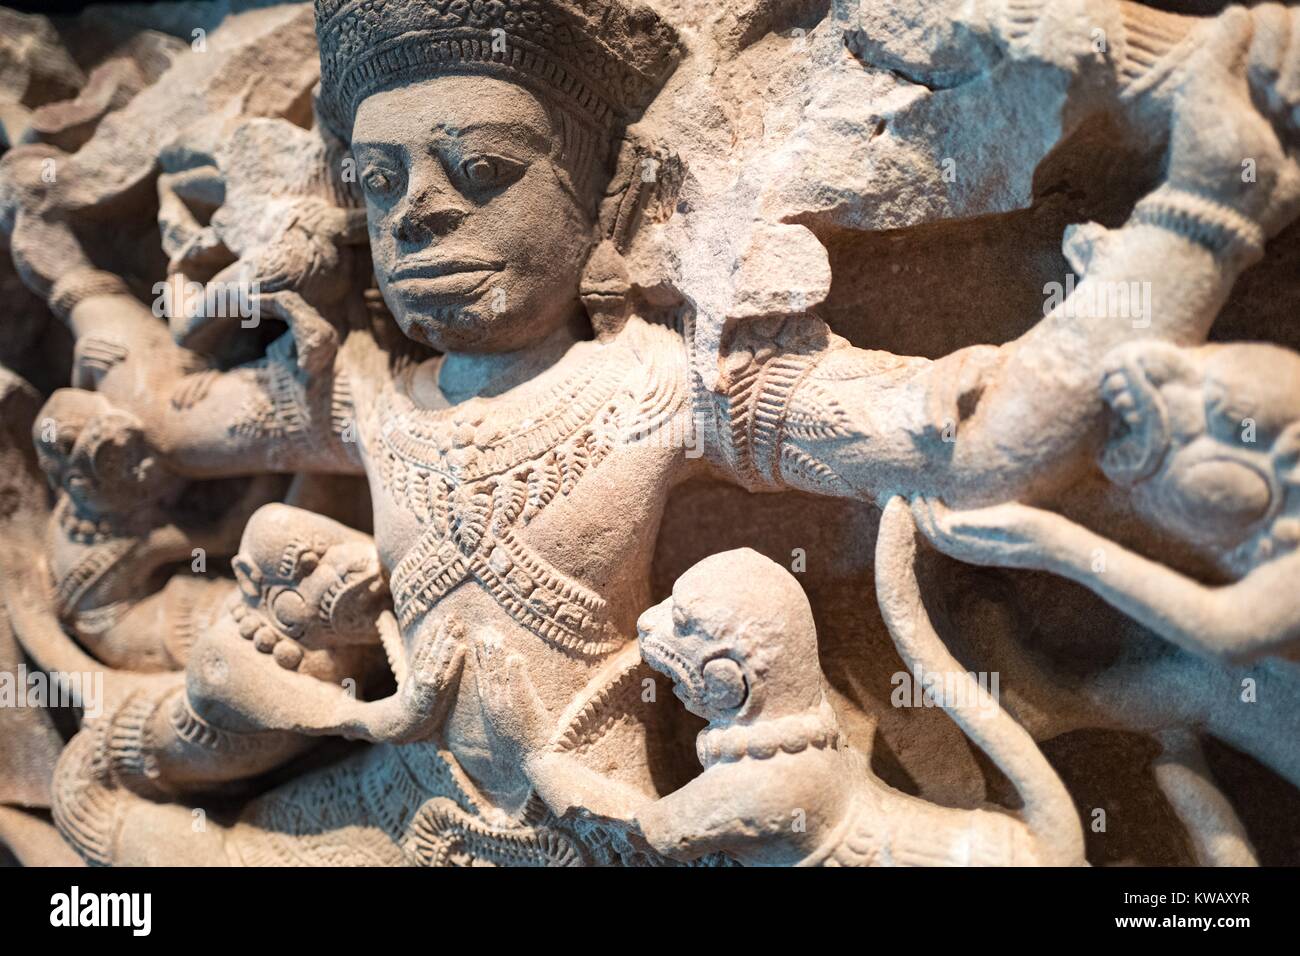 Vista detallada de la India trabajo tallados en piedra Kumbhakarna batallas de los monos, que muestra una escena de la épica Ramayana en el que derrotas Kumbhakarna un ejército de monos, 2 de octubre de 2016. Foto de stock